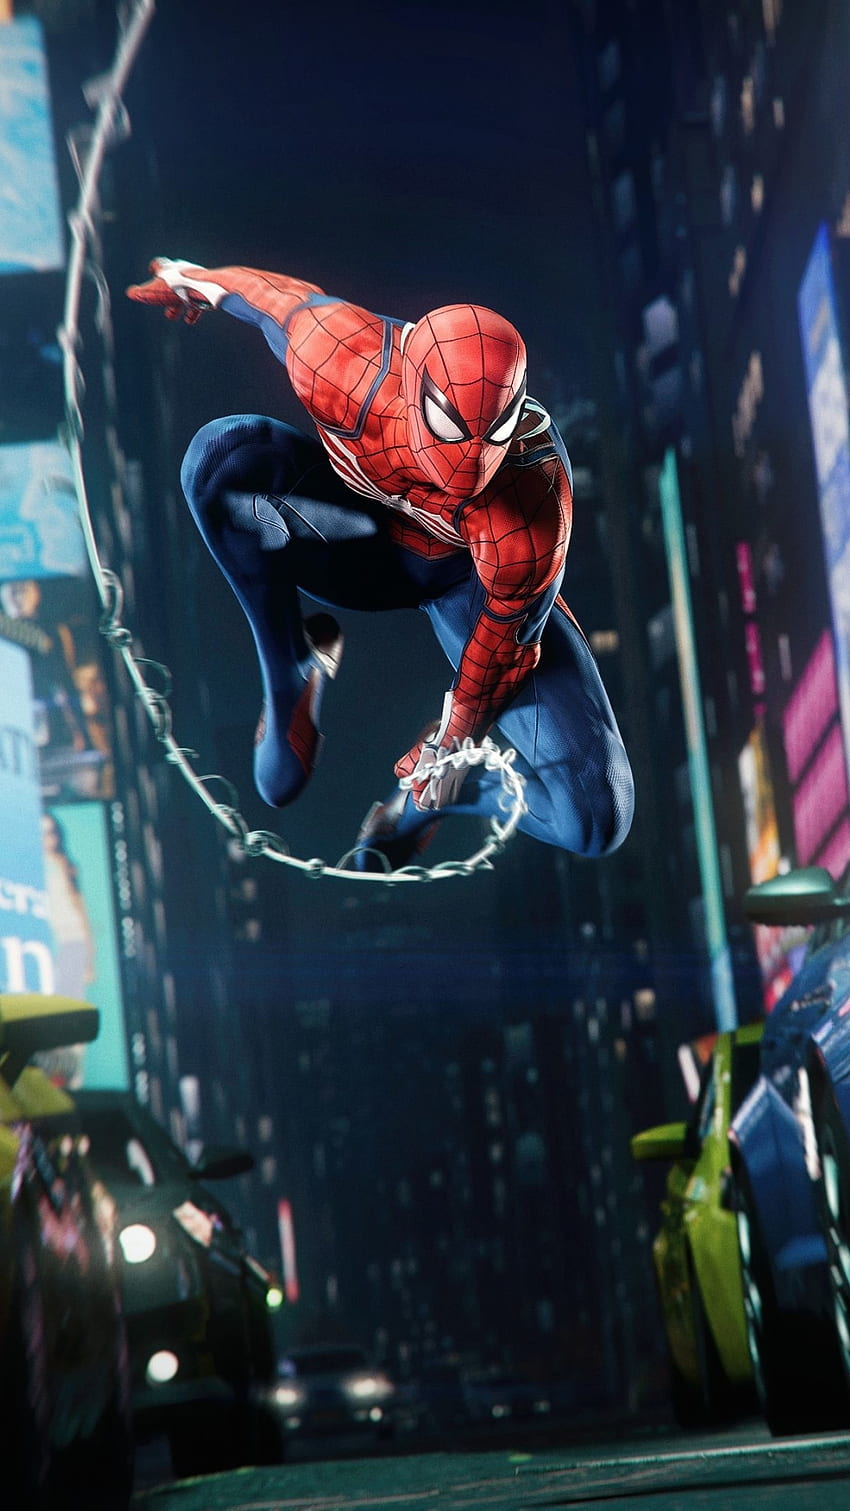 Marvel's Spider Man Remastered IPhone 7, 6s, 6 Plus y Pixel XL, One Plus 3, 3t, 5, Juegos, y Background Den, Spider Man Mobile fondo de pantalla del teléfono